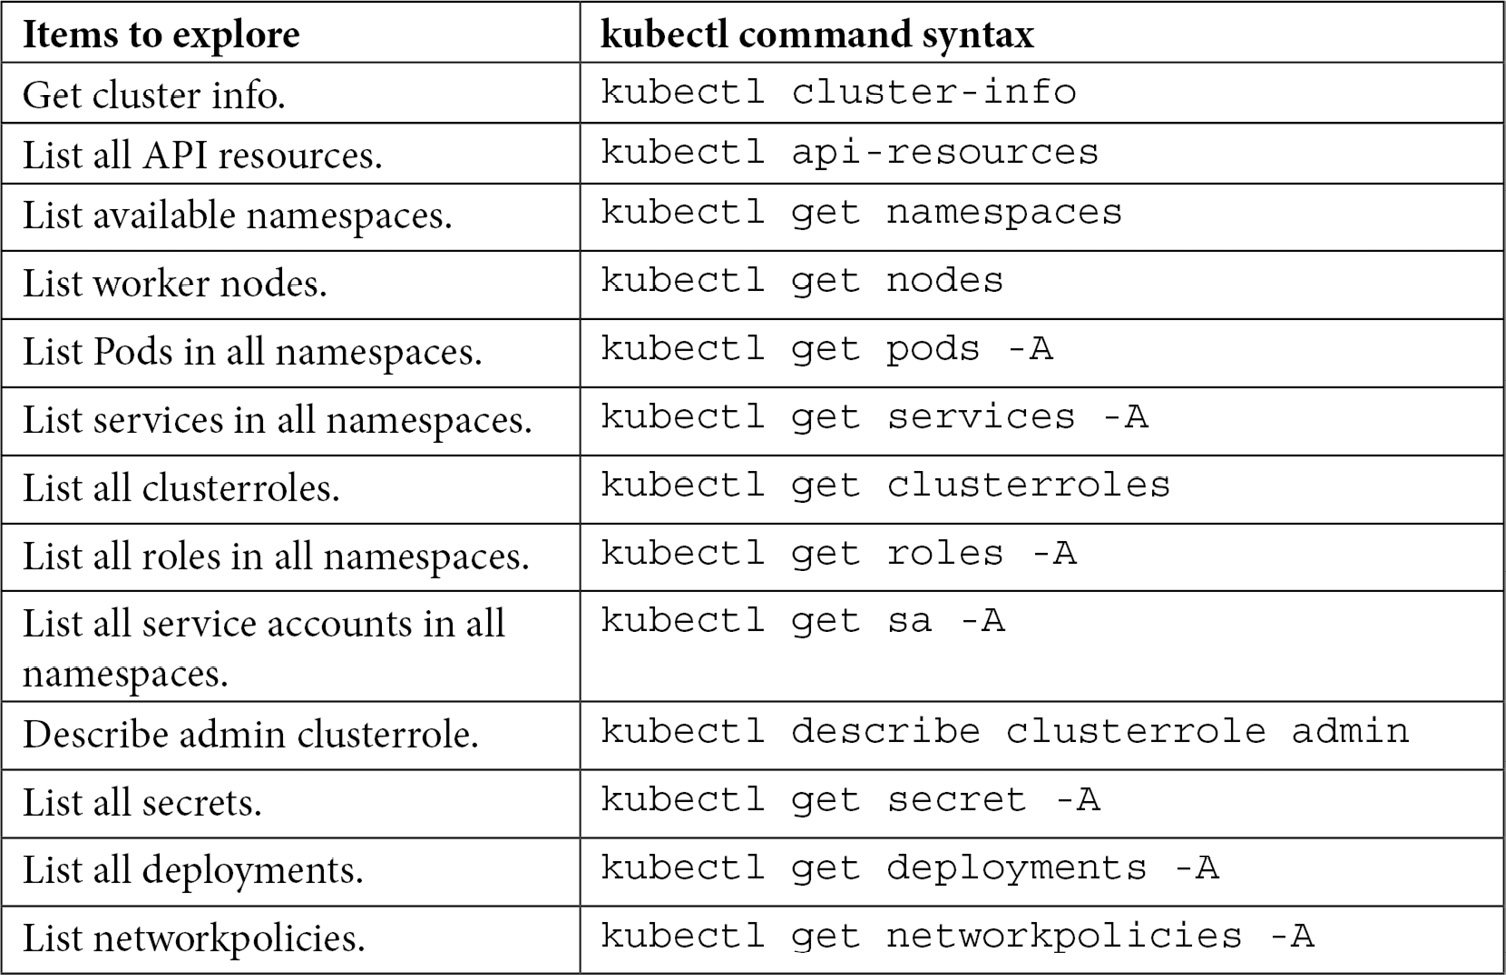 Table 6.1 – kubectl commands
